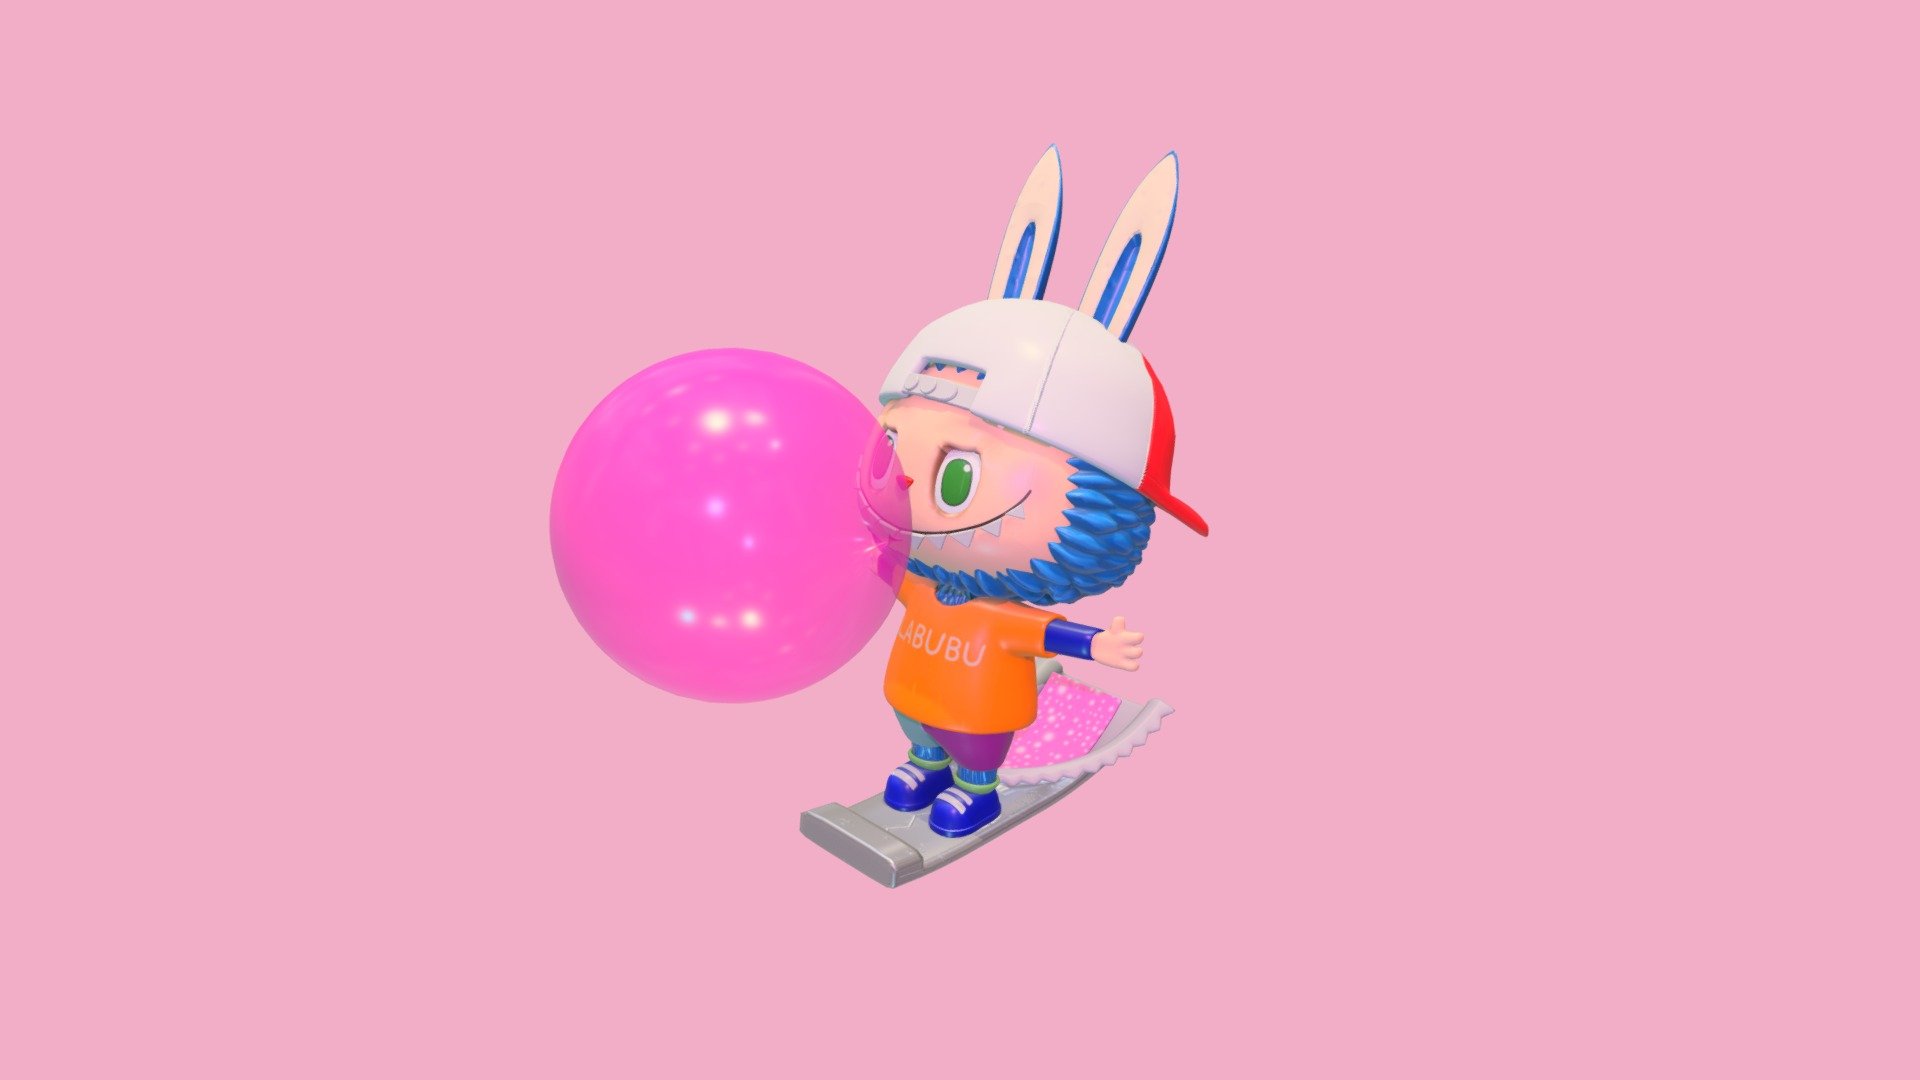 [SD character] LABUBU bubble gum
The Monsters Candy Series

Chewing Gum LABUBU - [SD character] LABUBU bubble gum - 3D model by minhaeshin 3d model